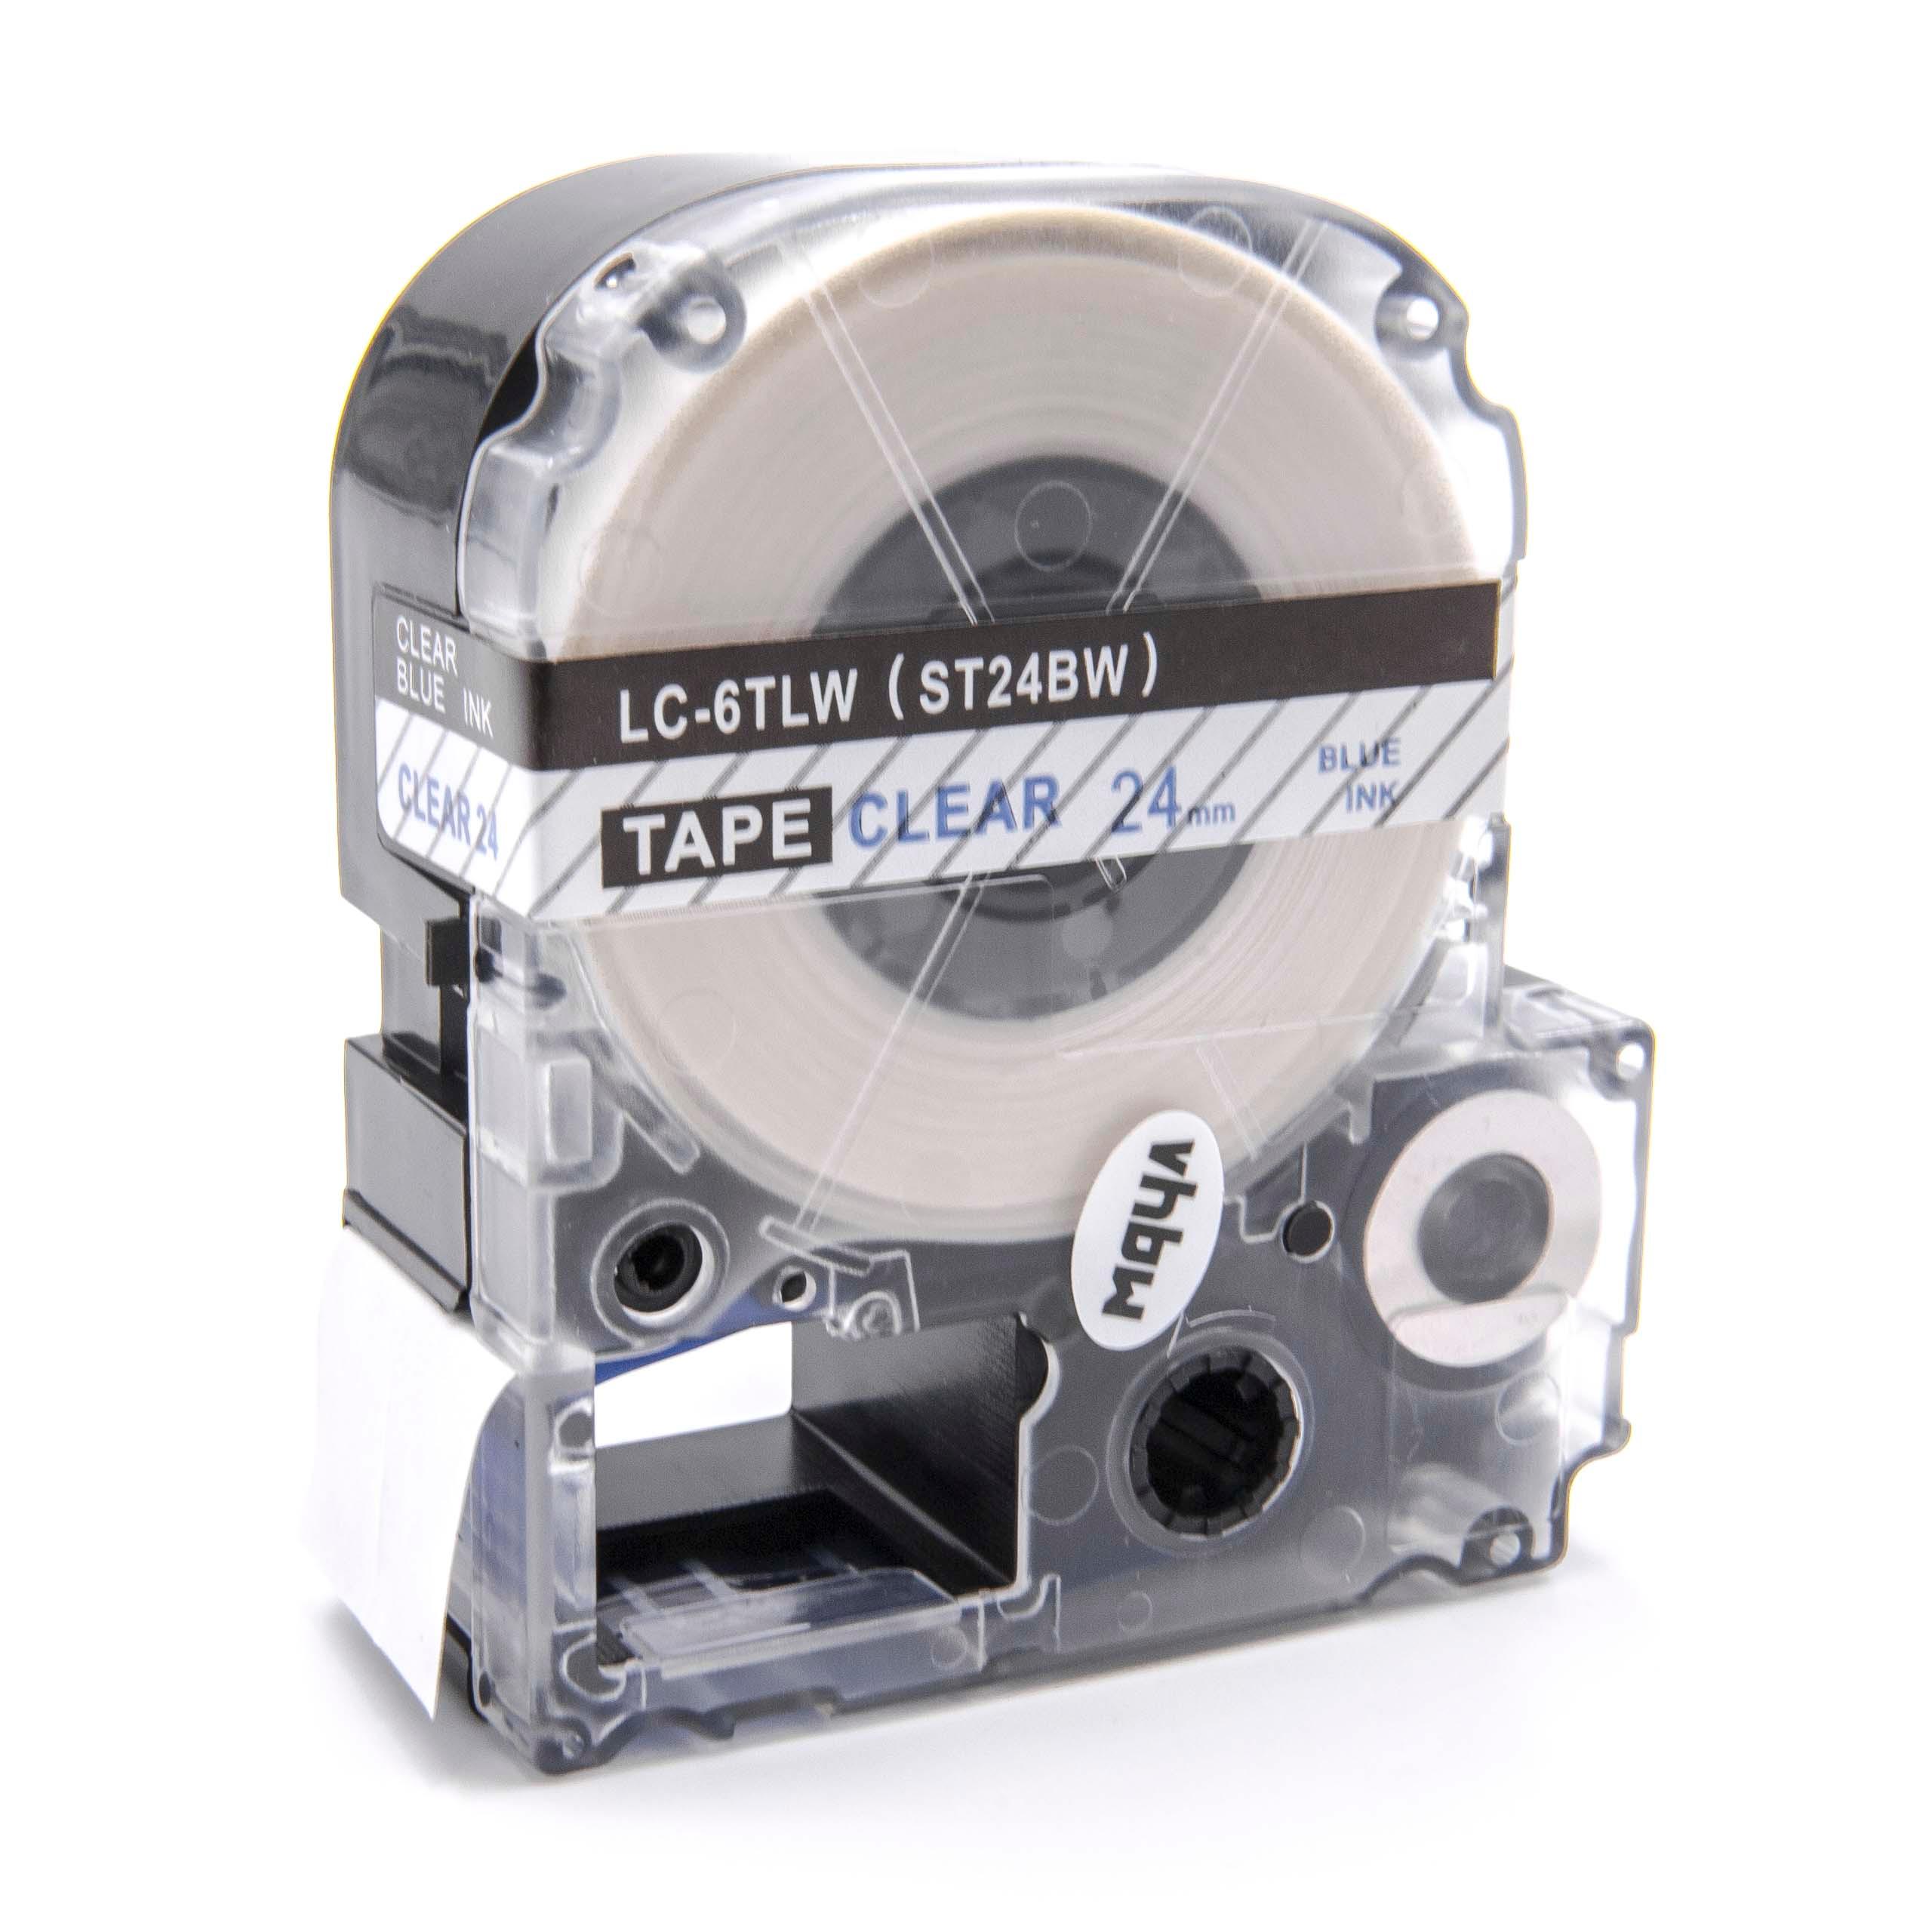 Cassetta nastro sostituisce Epson LC-6TLW per etichettatrice Epson 24mm blu su trasparente